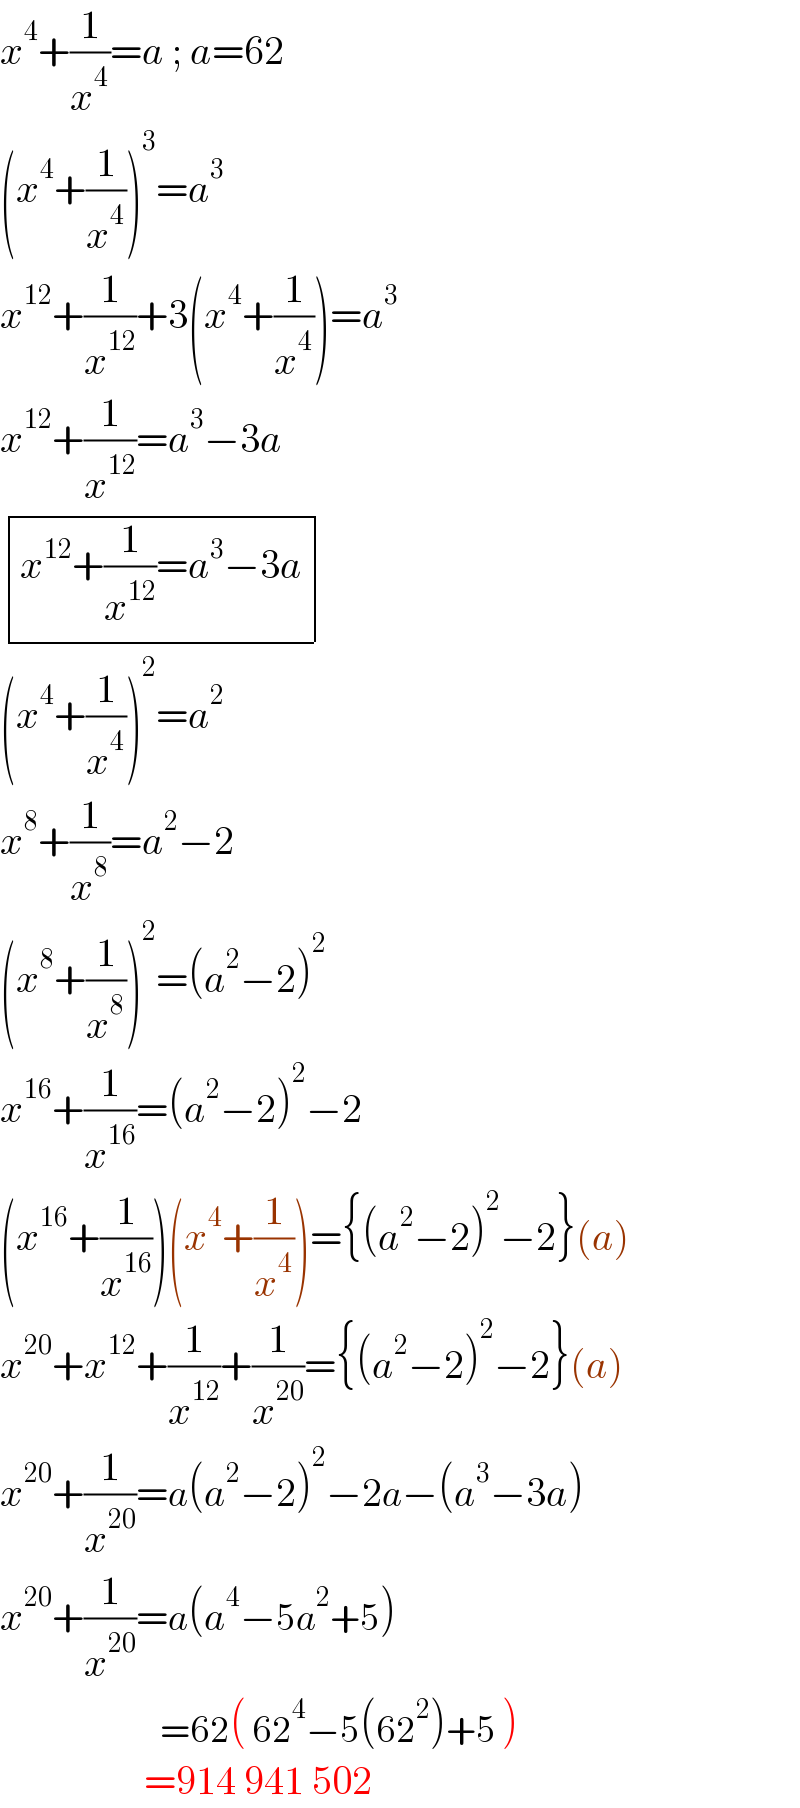 x^4 +(1/x^4 )=a ; a=62  (x^4 +(1/x^4 ))^3 =a^3   x^(12) +(1/x^(12) )+3(x^4 +(1/x^4 ))=a^3   x^(12) +(1/x^(12) )=a^3 −3a   determinant (((x^(12) +(1/x^(12) )=a^3 −3a)))  (x^4 +(1/x^4 ))^2 =a^2   x^8 +(1/x^8 )=a^2 −2  (x^8 +(1/x^8 ))^2 =(a^2 −2)^2   x^(16) +(1/x^(16) )=(a^2 −2)^2 −2  (x^(16) +(1/x^(16) ))(x^4 +(1/x^4 ))={(a^2 −2)^2 −2}(a)  x^(20) +x^(12) +(1/x^(12) )+(1/x^(20) )={(a^2 −2)^2 −2}(a)  x^(20) +(1/x^(20) )=a(a^2 −2)^2 −2a−(a^3 −3a)  x^(20) +(1/x^(20) )=a(a^4 −5a^2 +5)                      =62( 62^4 −5(62^2 )+5 )                    =914 941 502  